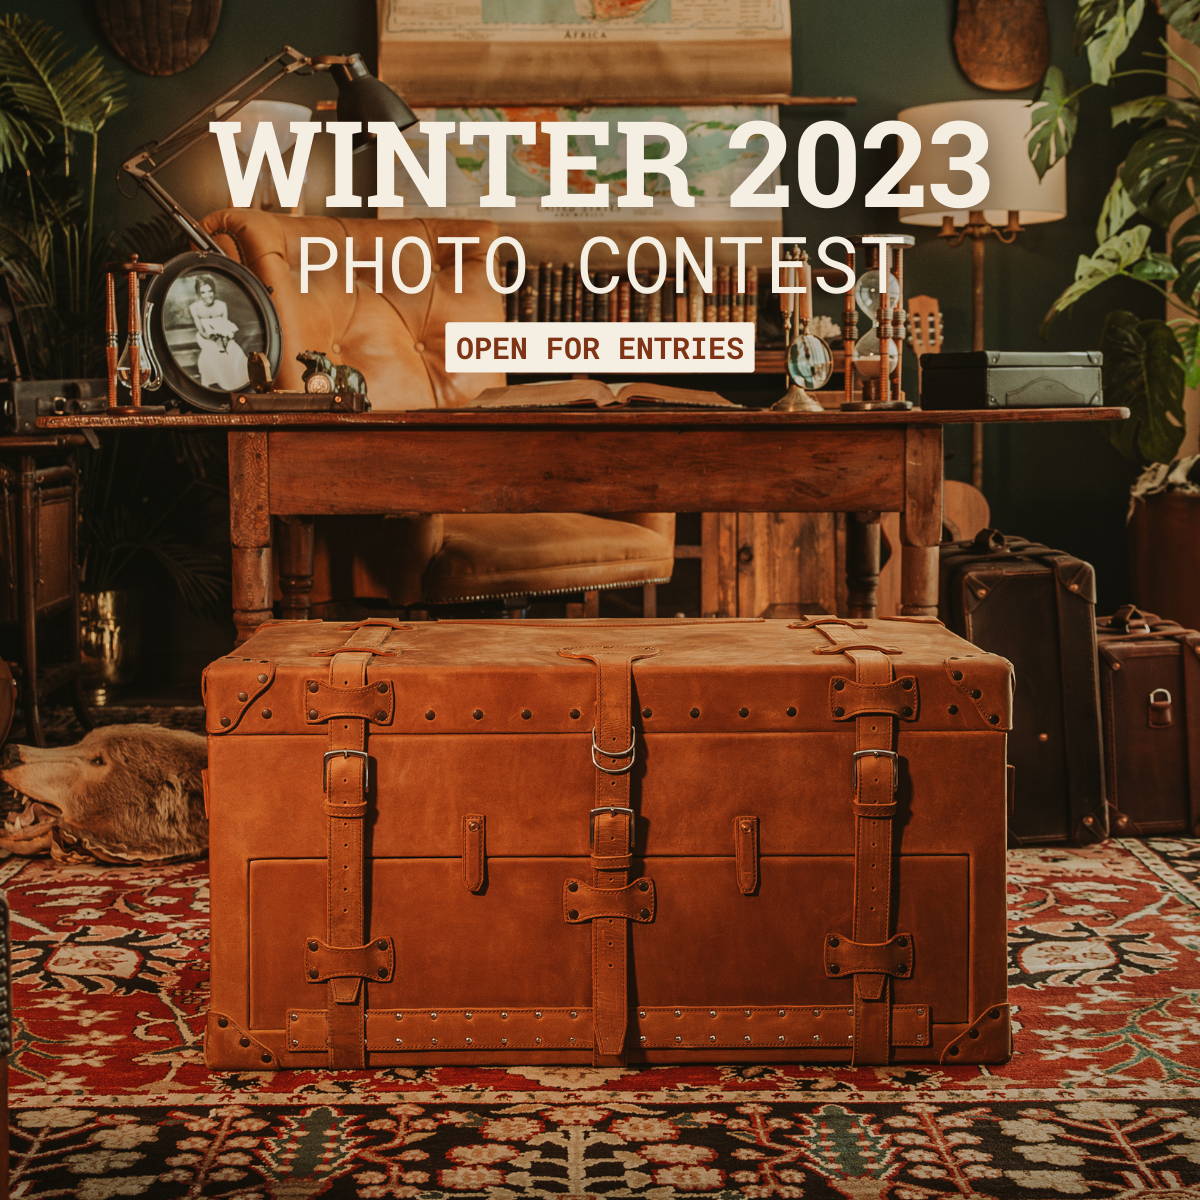 Saddleback Photo Contest - Enter Here